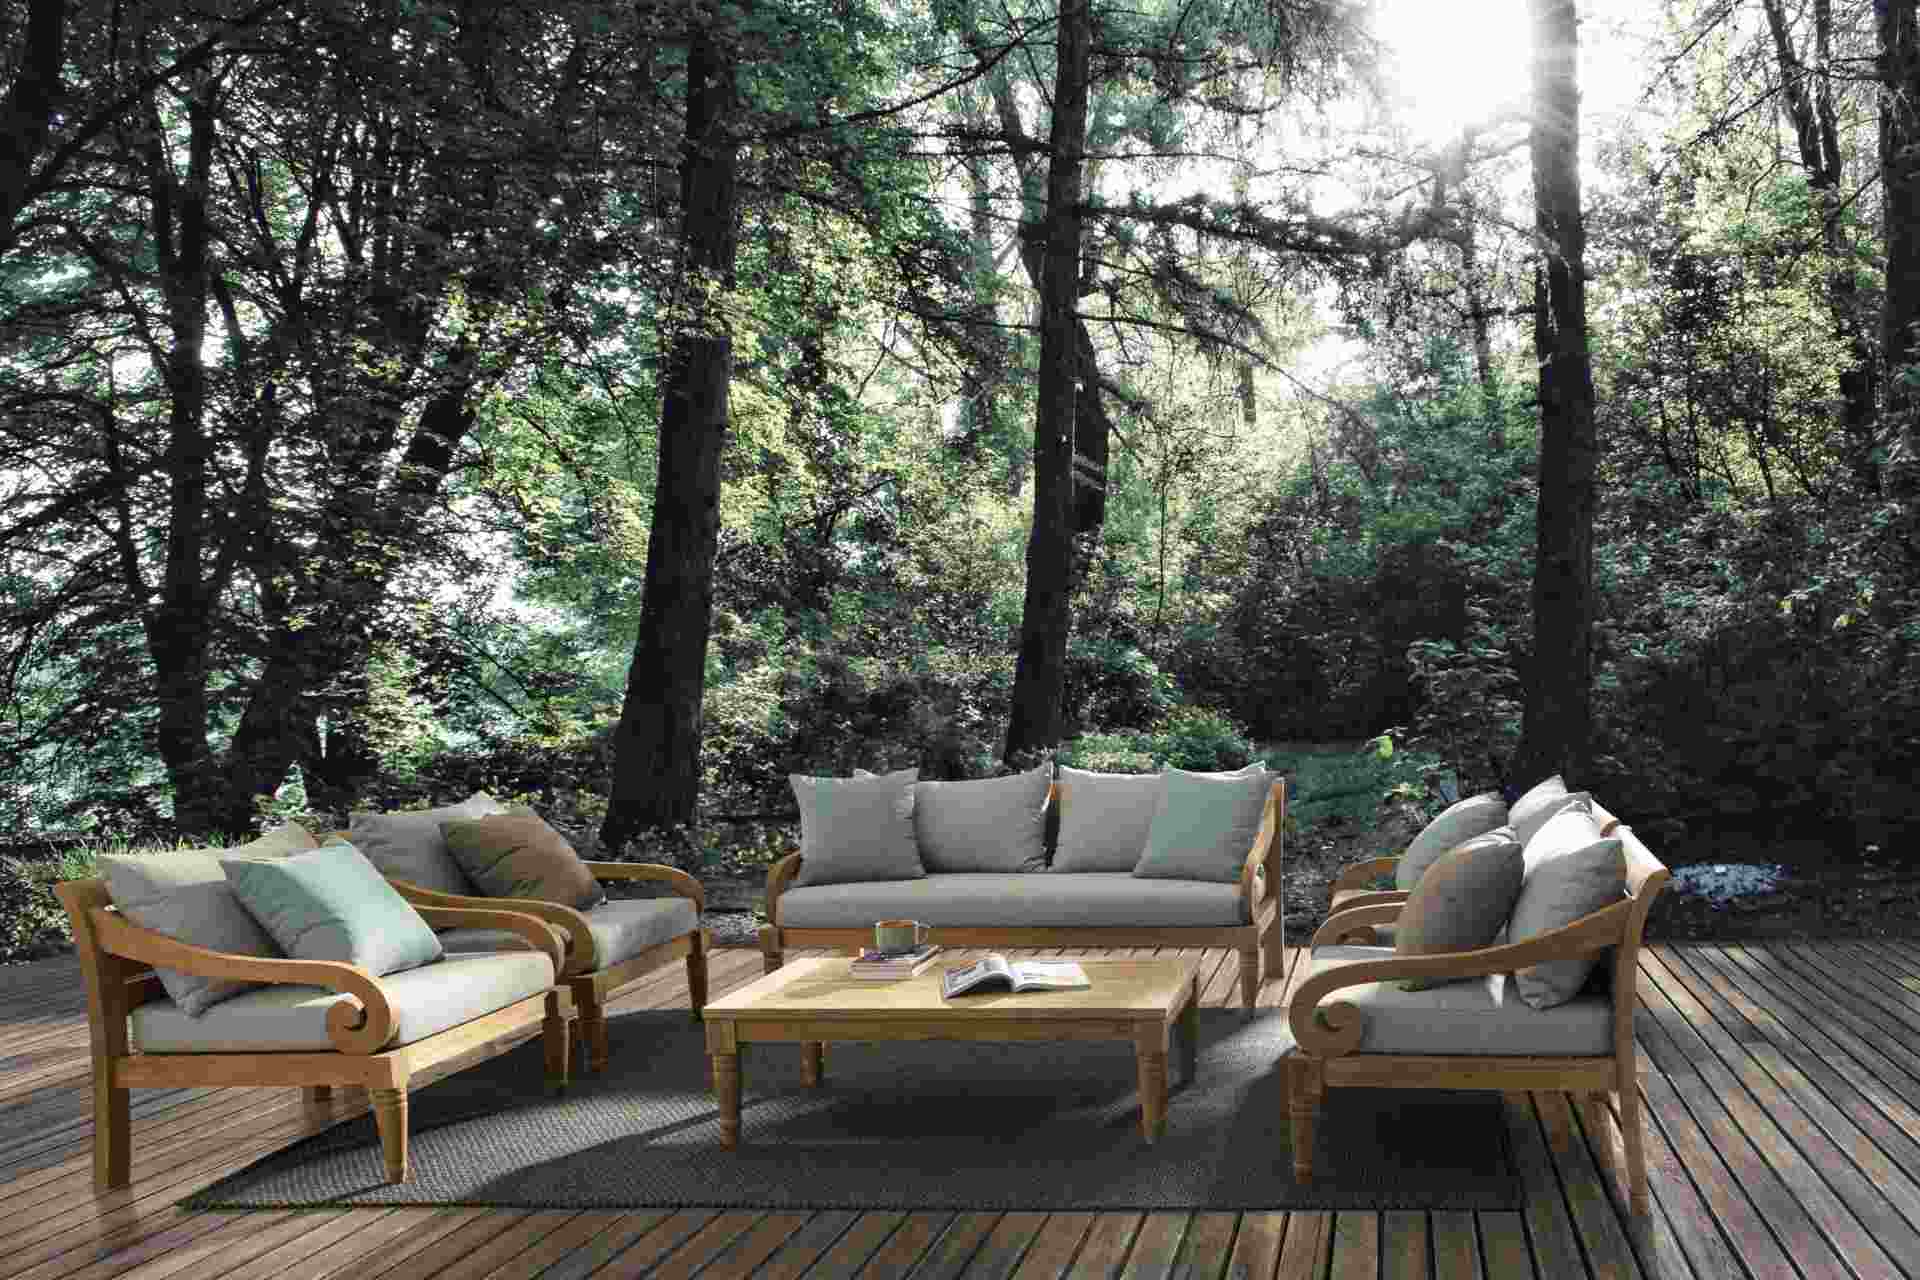 Der Gartensessel Karuba überzeugt mit seinem klassischen Design. Gefertigt wurde er aus Teakholz, welche einen natürlichen Farbton besitzt. Die Kissen und Auflagen haben eine grüne Farbe. Der Sessel verfügt über eine Sitzhöhe von 42 cm und ist für den Out